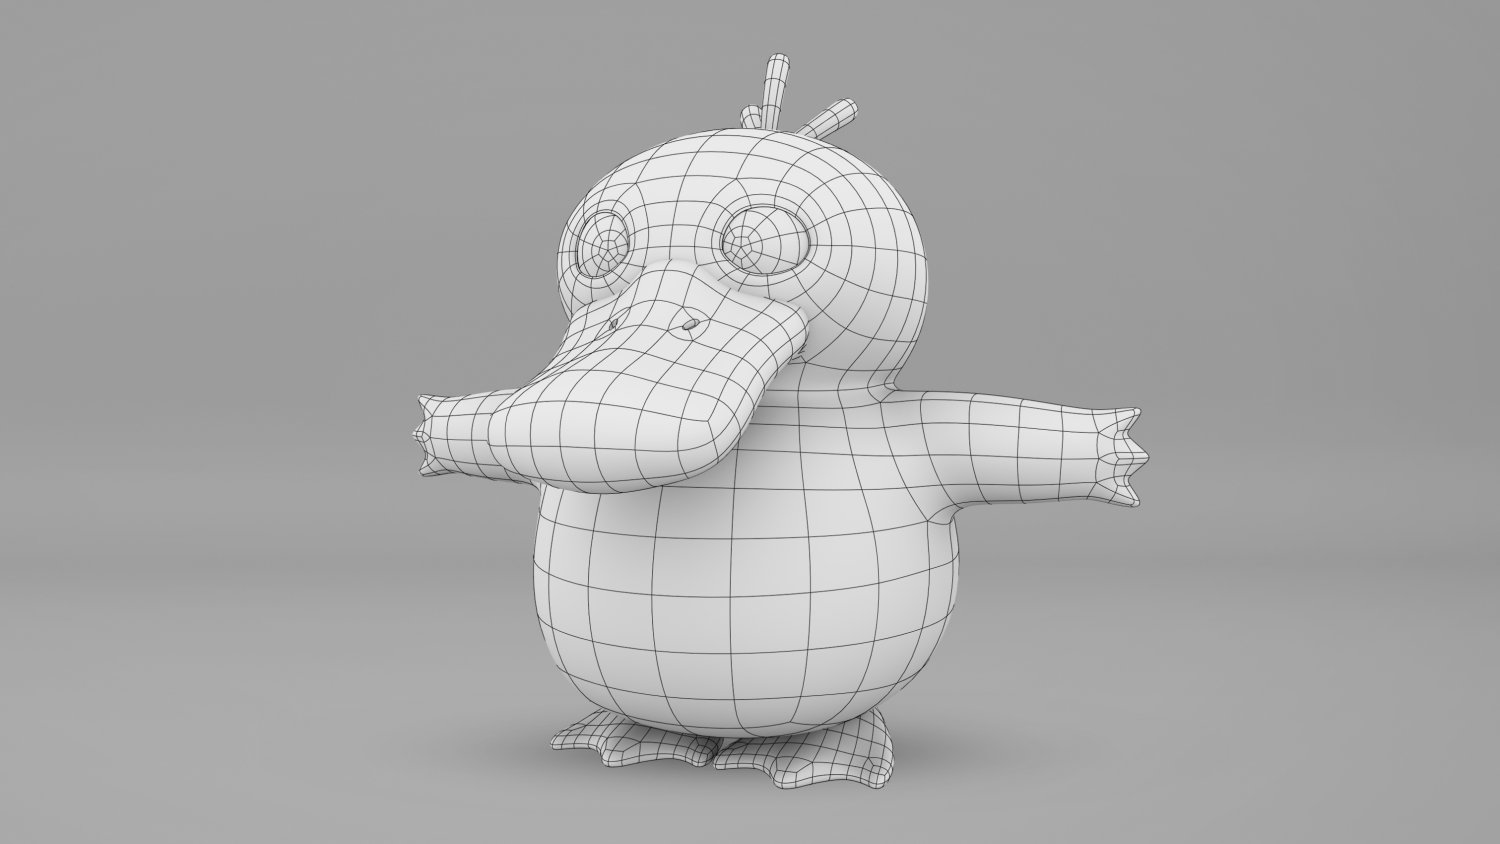 Psyduck pokémon 3d model - Finished Projects - Blender Artists Community